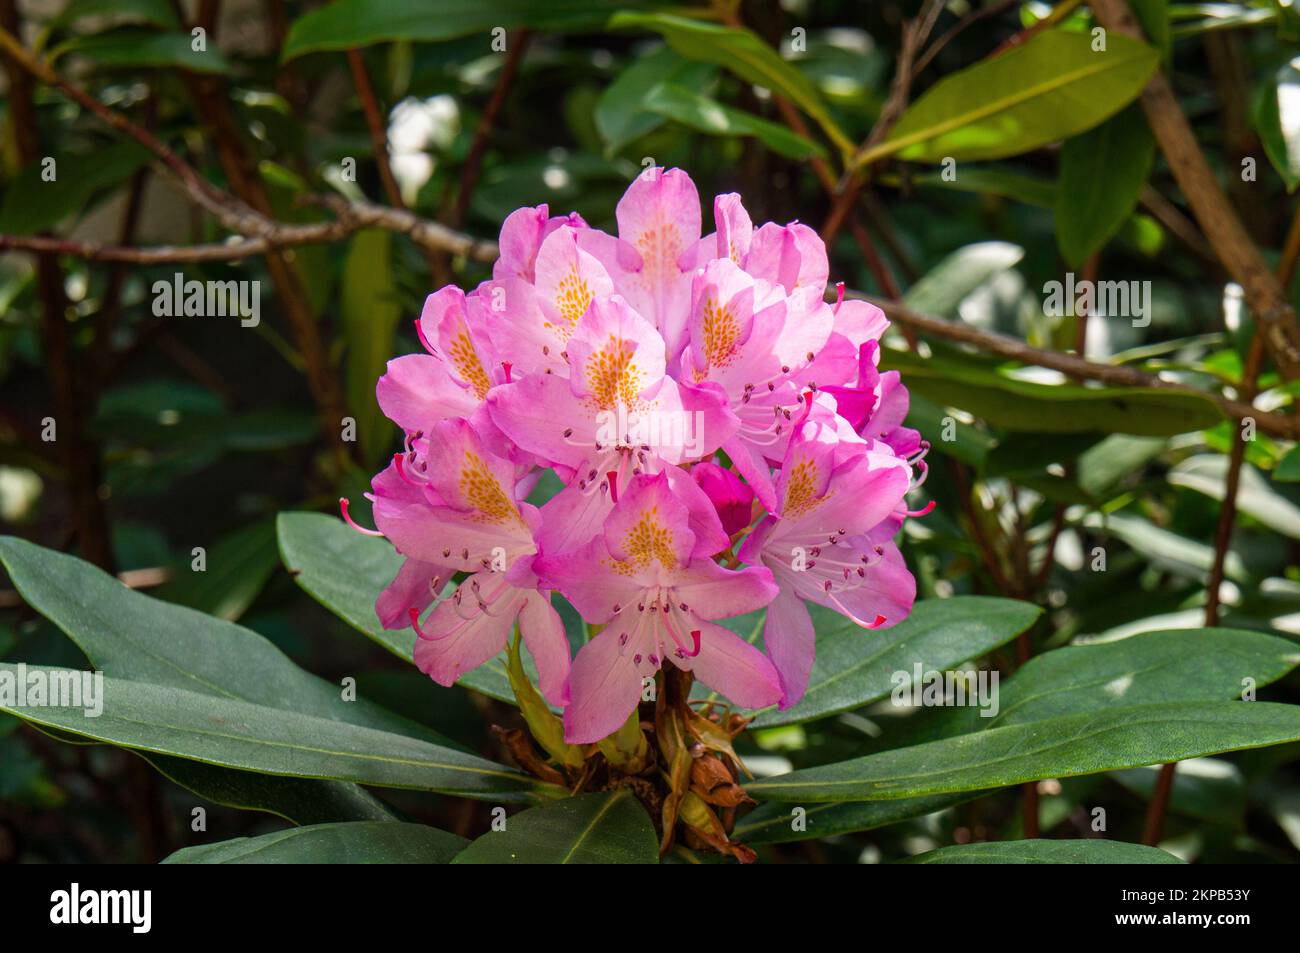 Kvetouci penisnik, kultivar Rhododendron 'Roseum Elegans', 9. cervna na zahrade v Pruhonicich u Prahy.—Flowering cultivar Rhododendron 'Roseum Elegans Stock Photo